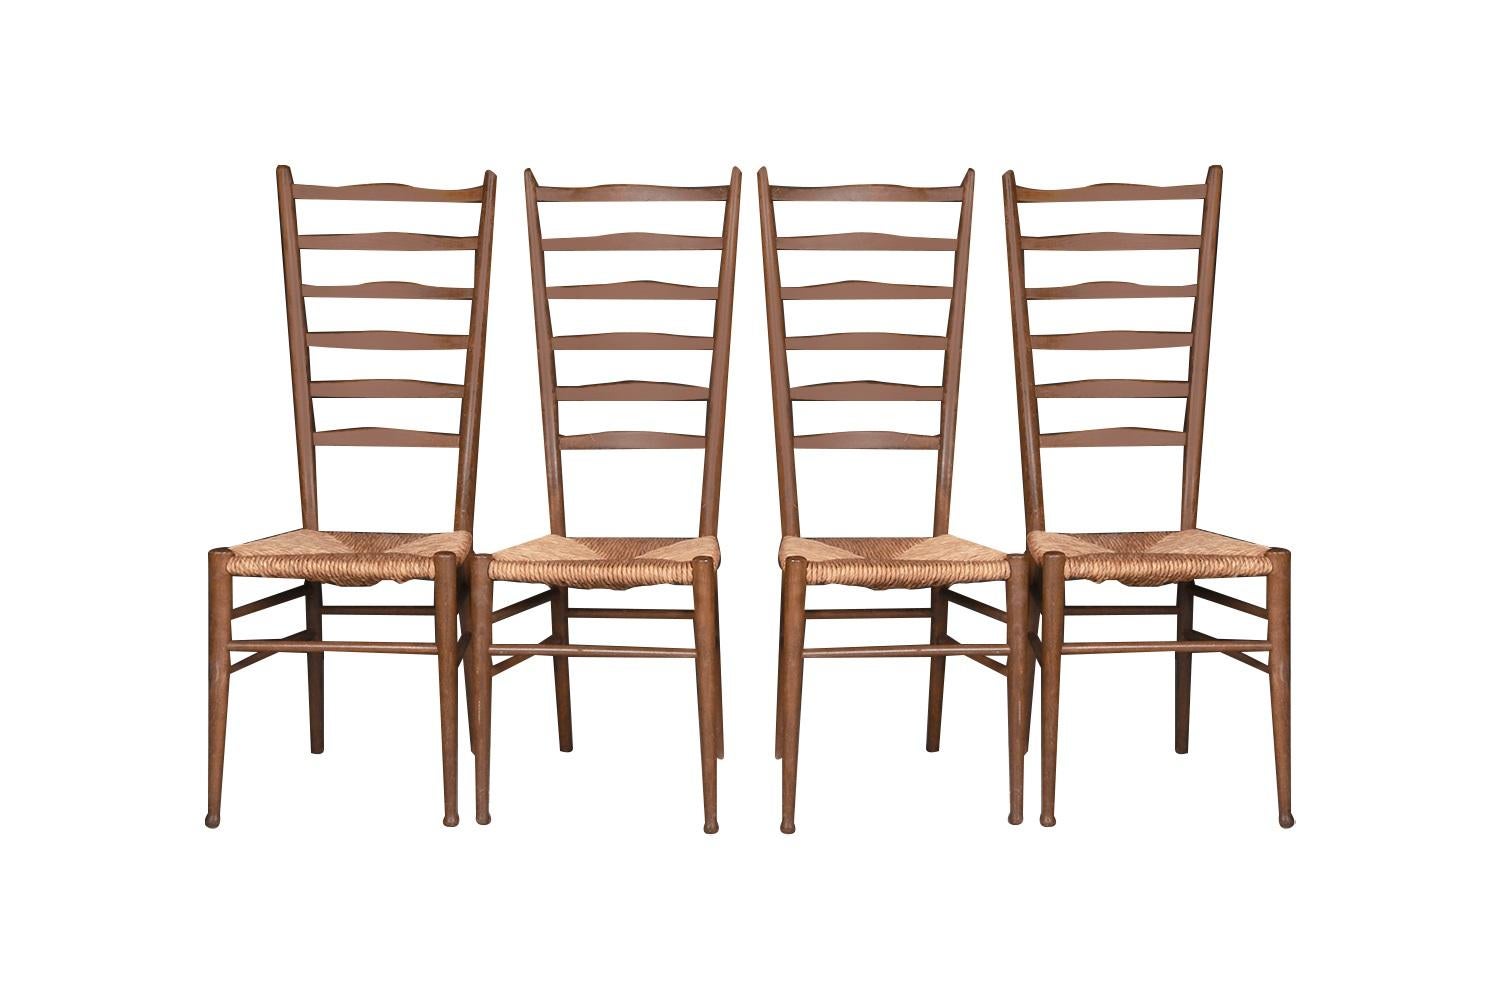 Außergewöhnlicher Satz von vier hohen Esszimmerstühlen mit Leiterlehne im Stil von Gio Ponti, Italien, ca. 1950er Jahre. Jeder Stuhl hat eine hohe Rückenlehne mit sechs horizontalen Latten, geflochtene Sitze aus Naturpapierkordel und ein hübsches